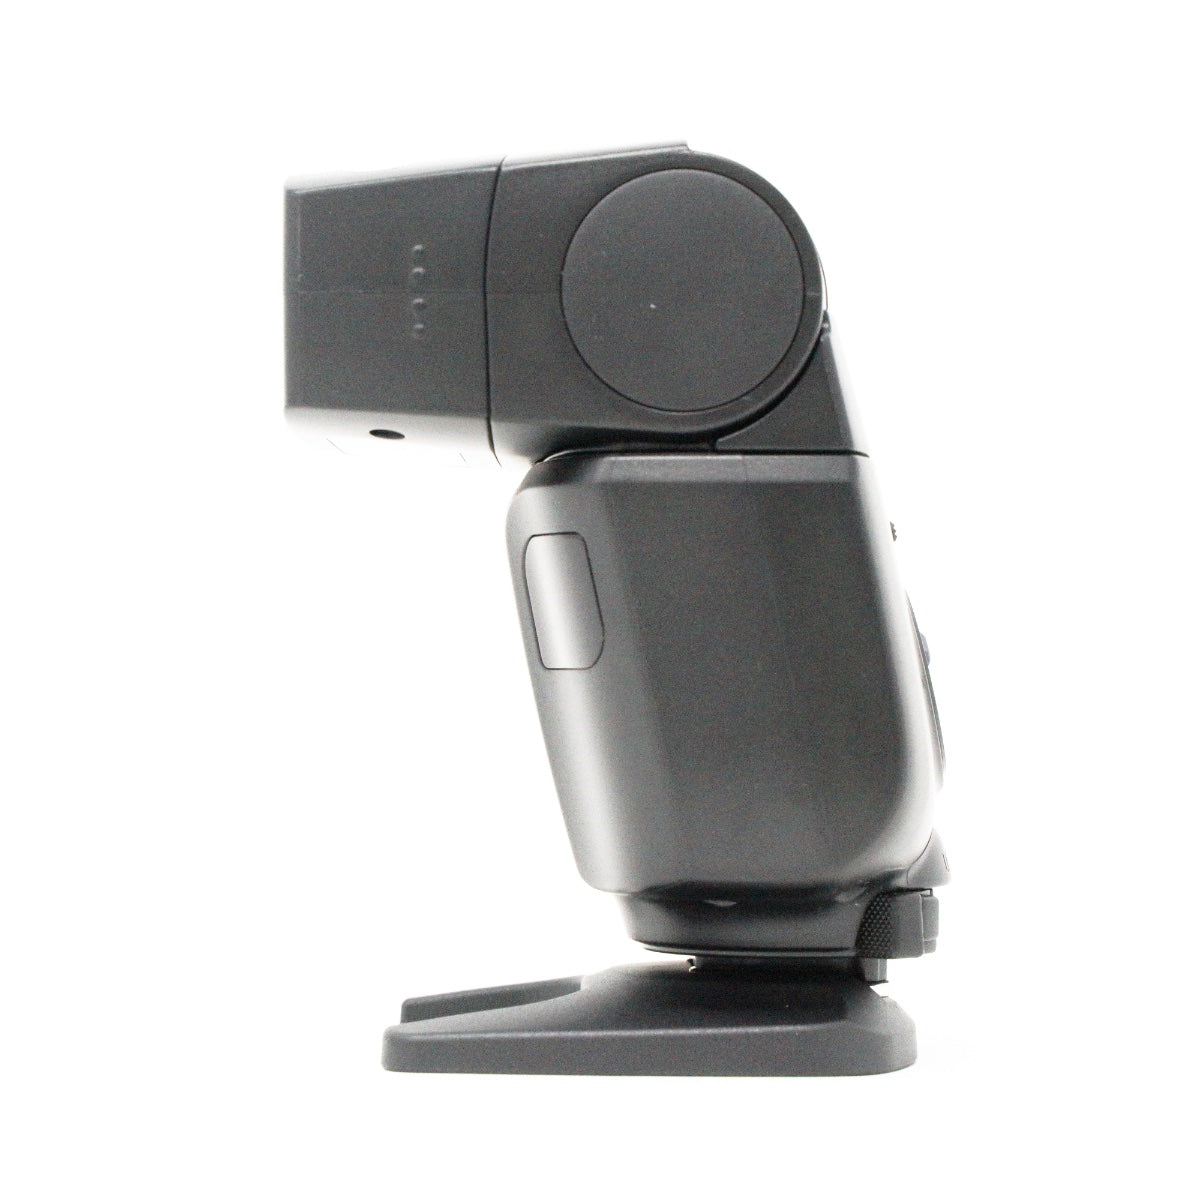 USED Canon Speedlite EL-100 Camera Flash